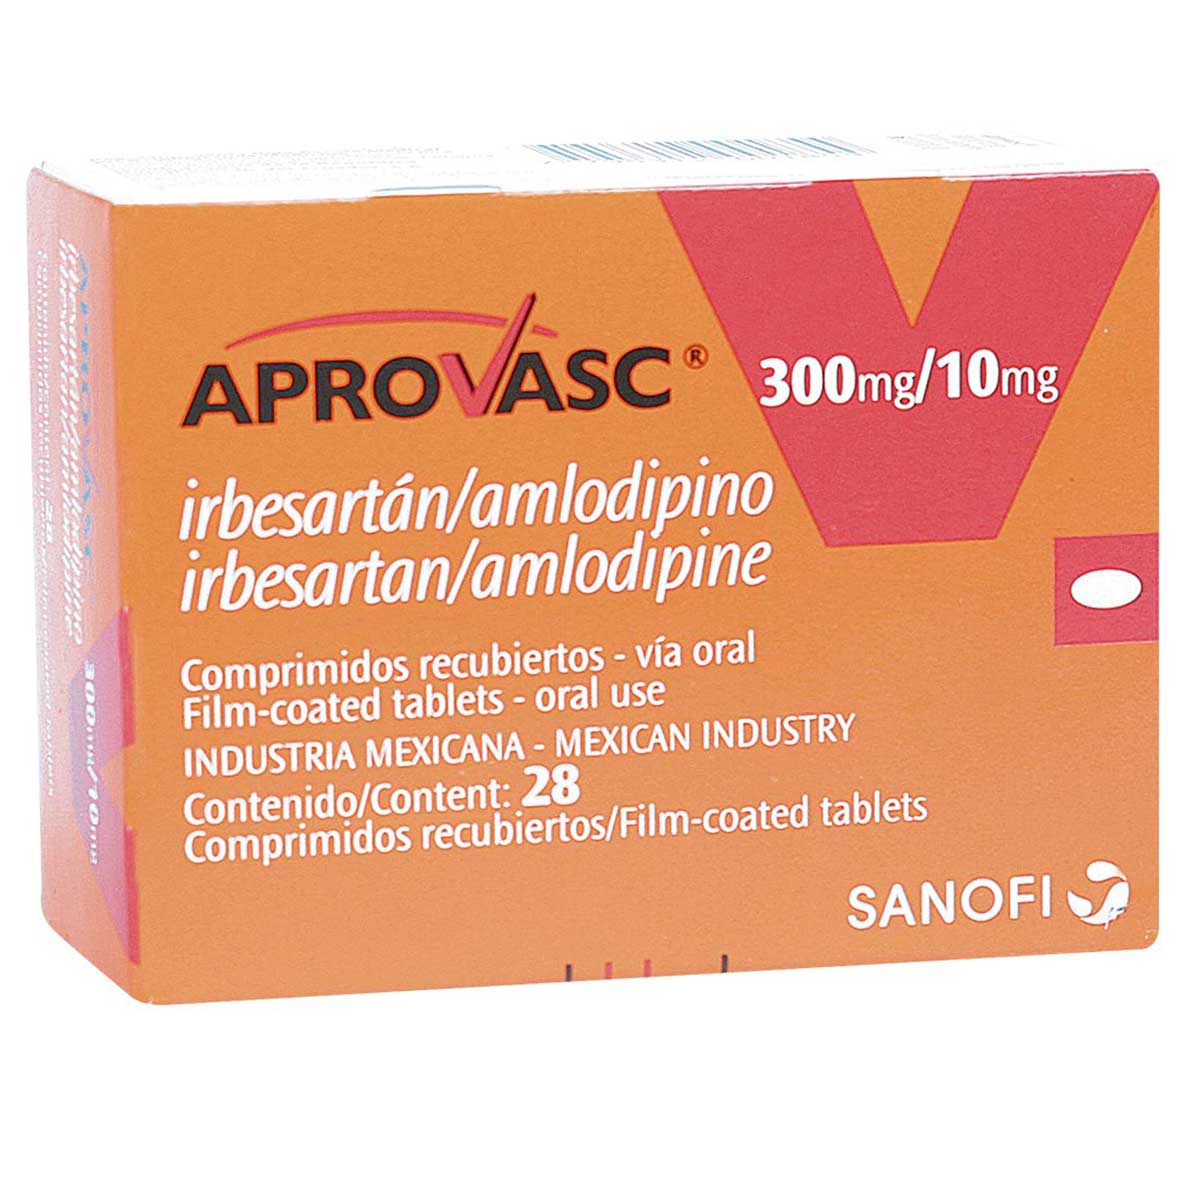 Aprovasc 300 Mg 10 Mg Tableta Recubierta Colsubsidio